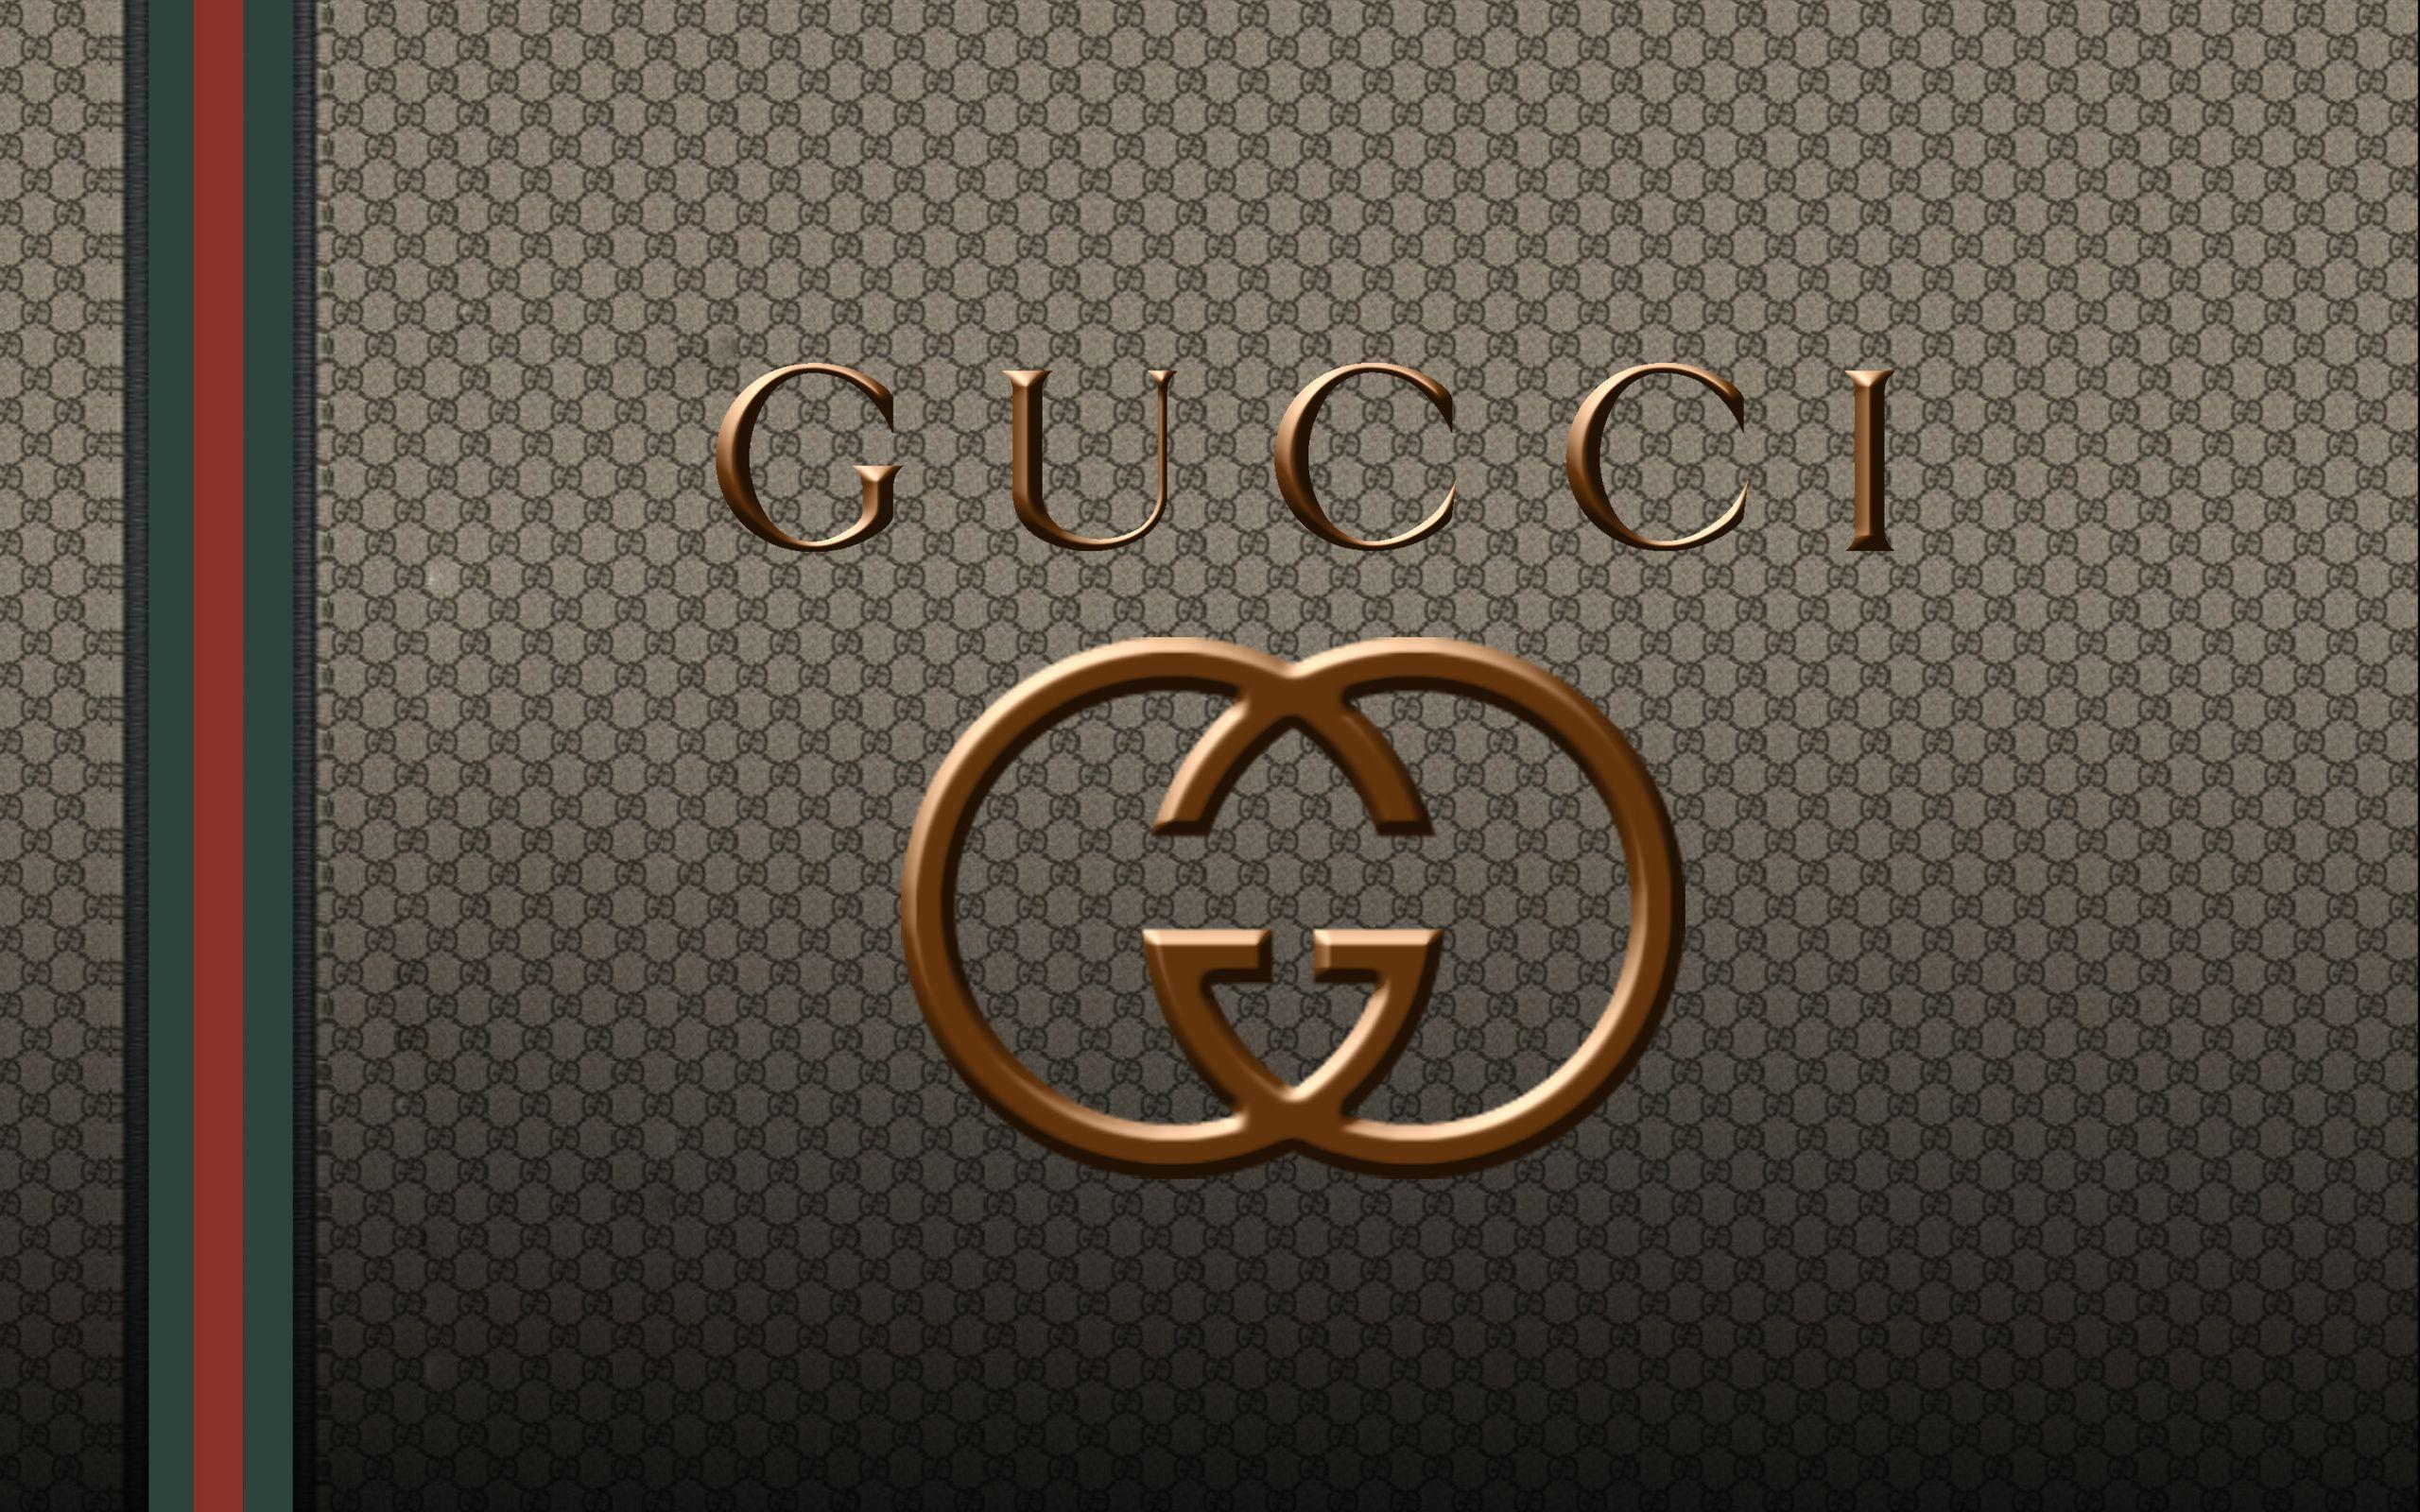 2560 x 1600 · jpeg - Gucci Wallpapers - Wallpaper Cave